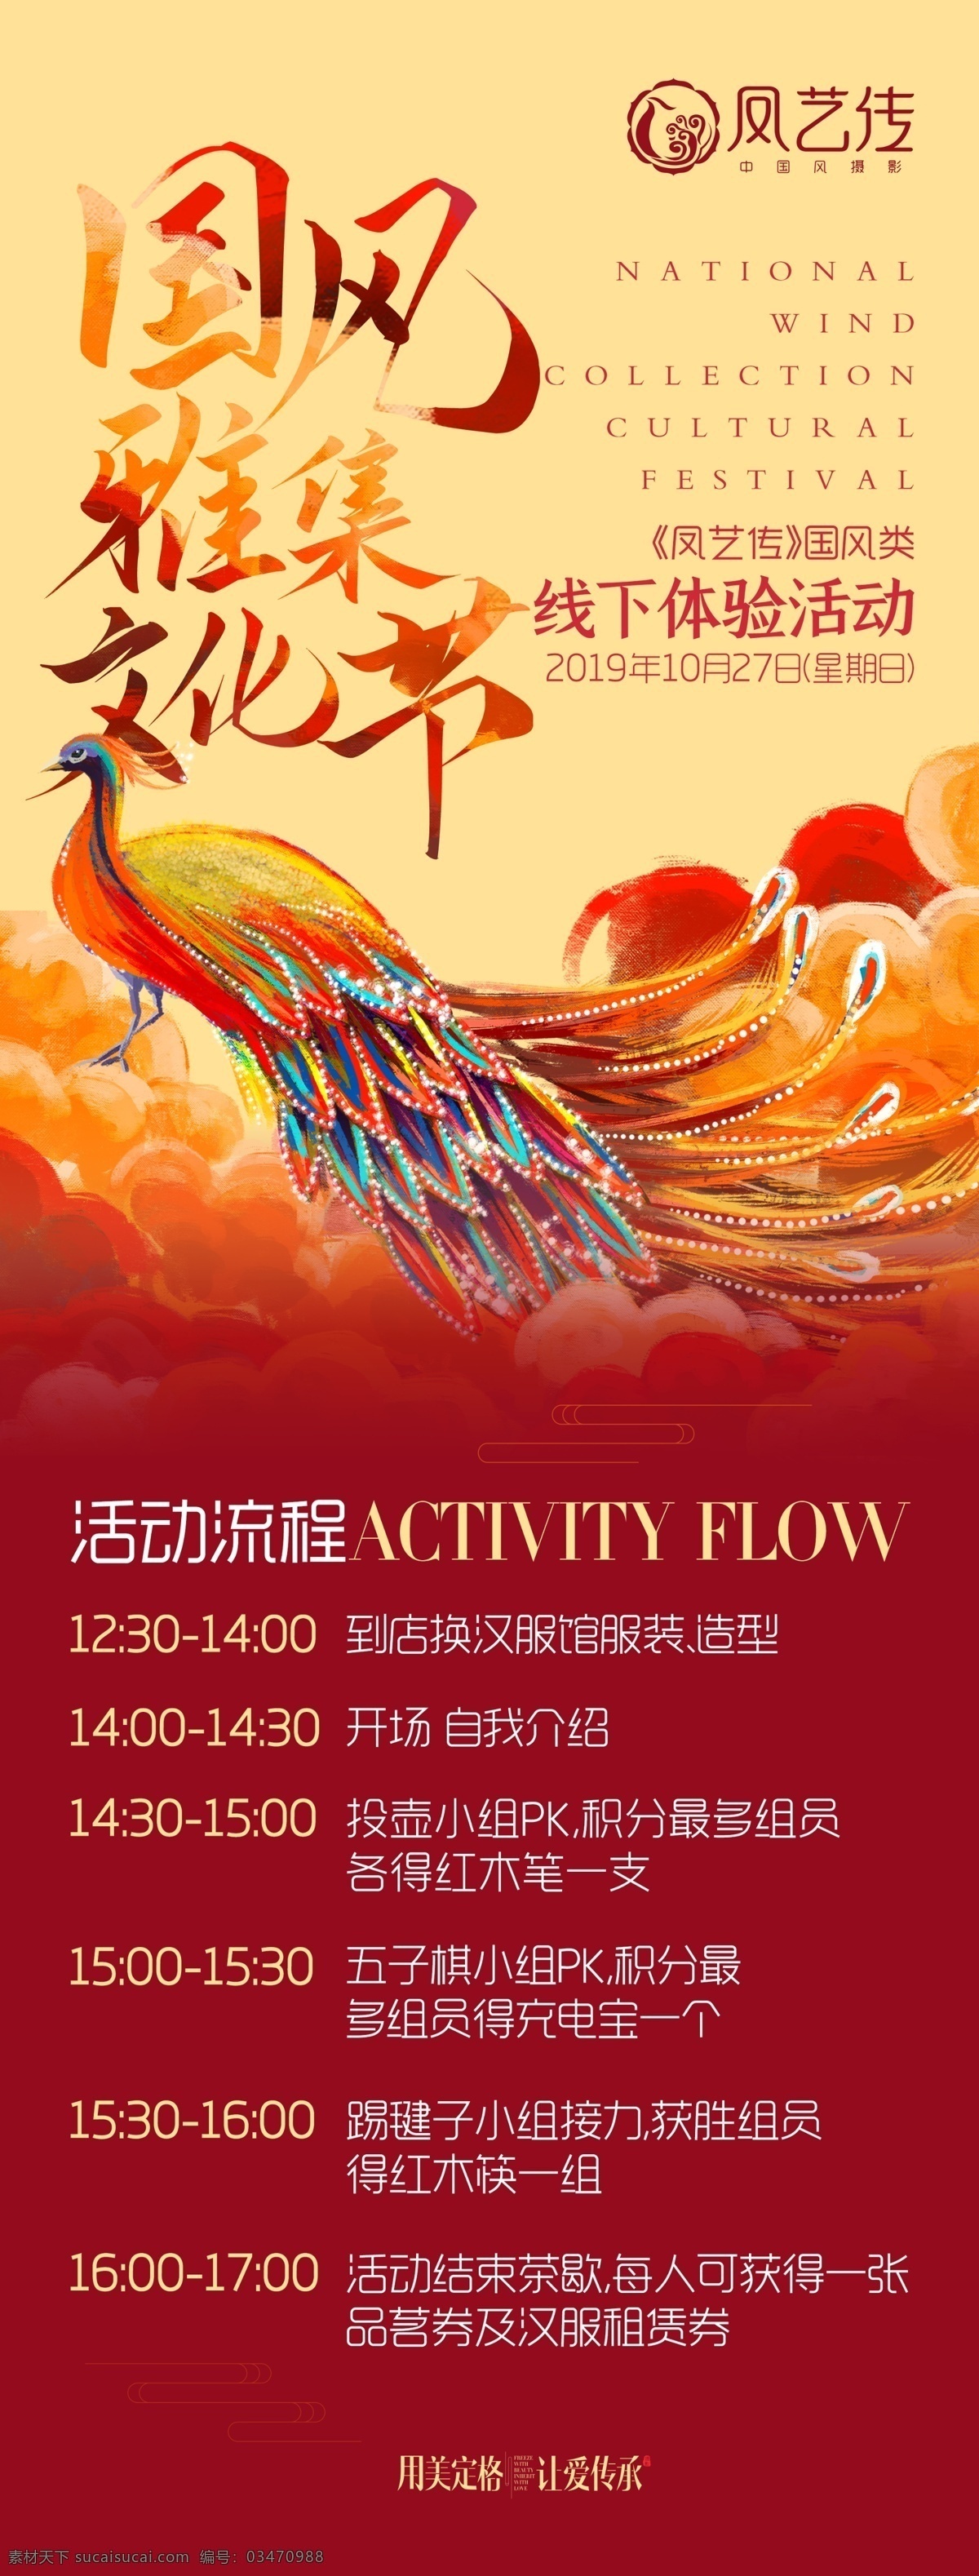 国风 雅集 文化节 古装 中国风 艺术 文化艺术